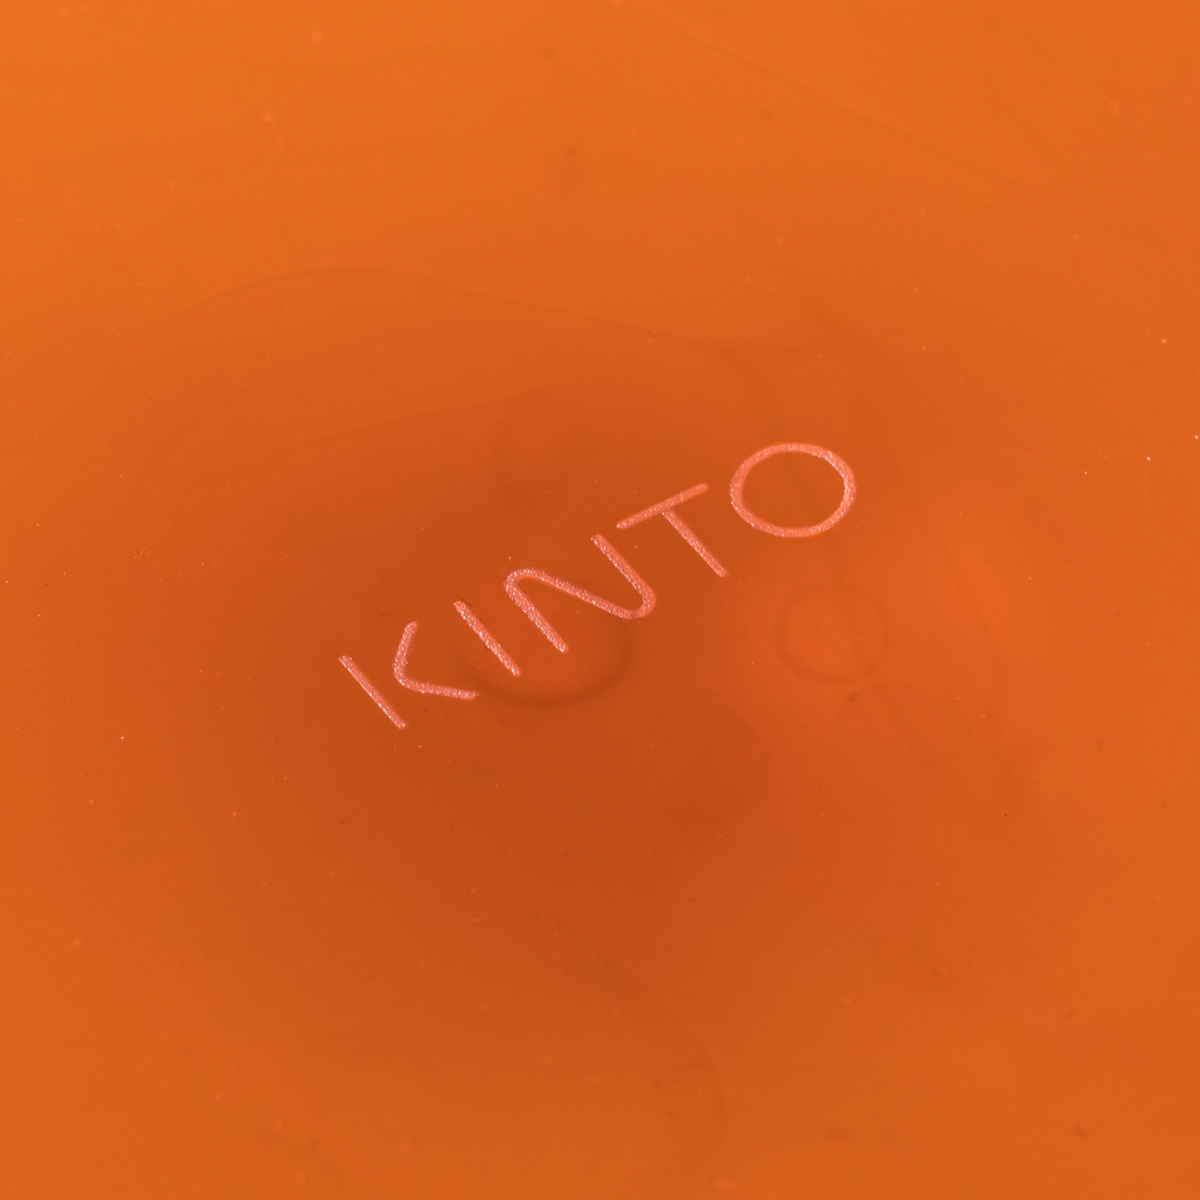 【KINTO】SEPIA カップ&ソーサー 270ml アンバー